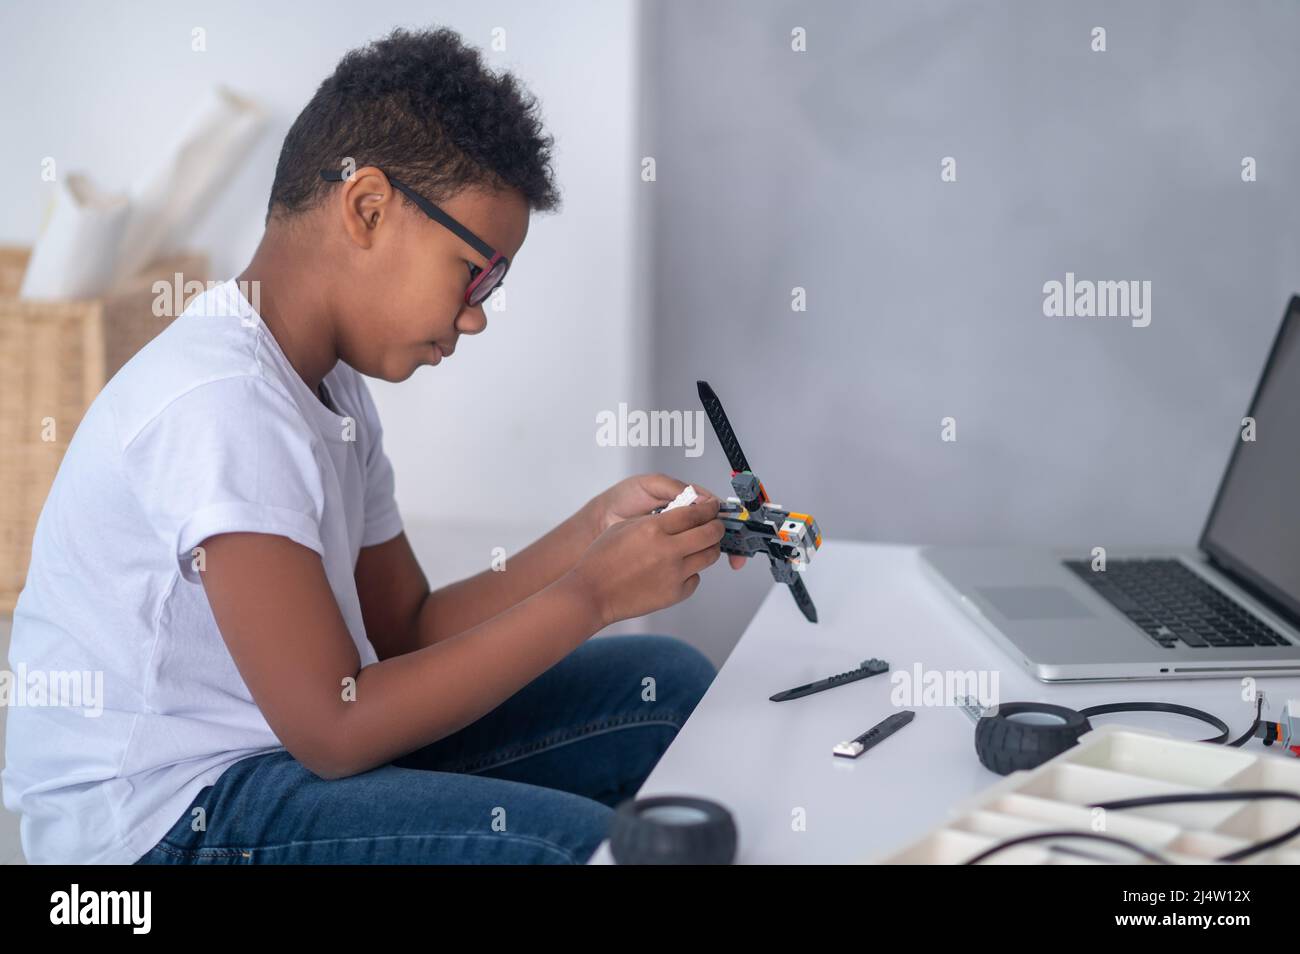 Ein dunkelhäutig gebauter Junge, der einen Transformator baut und beschäftigt aussieht Stockfoto